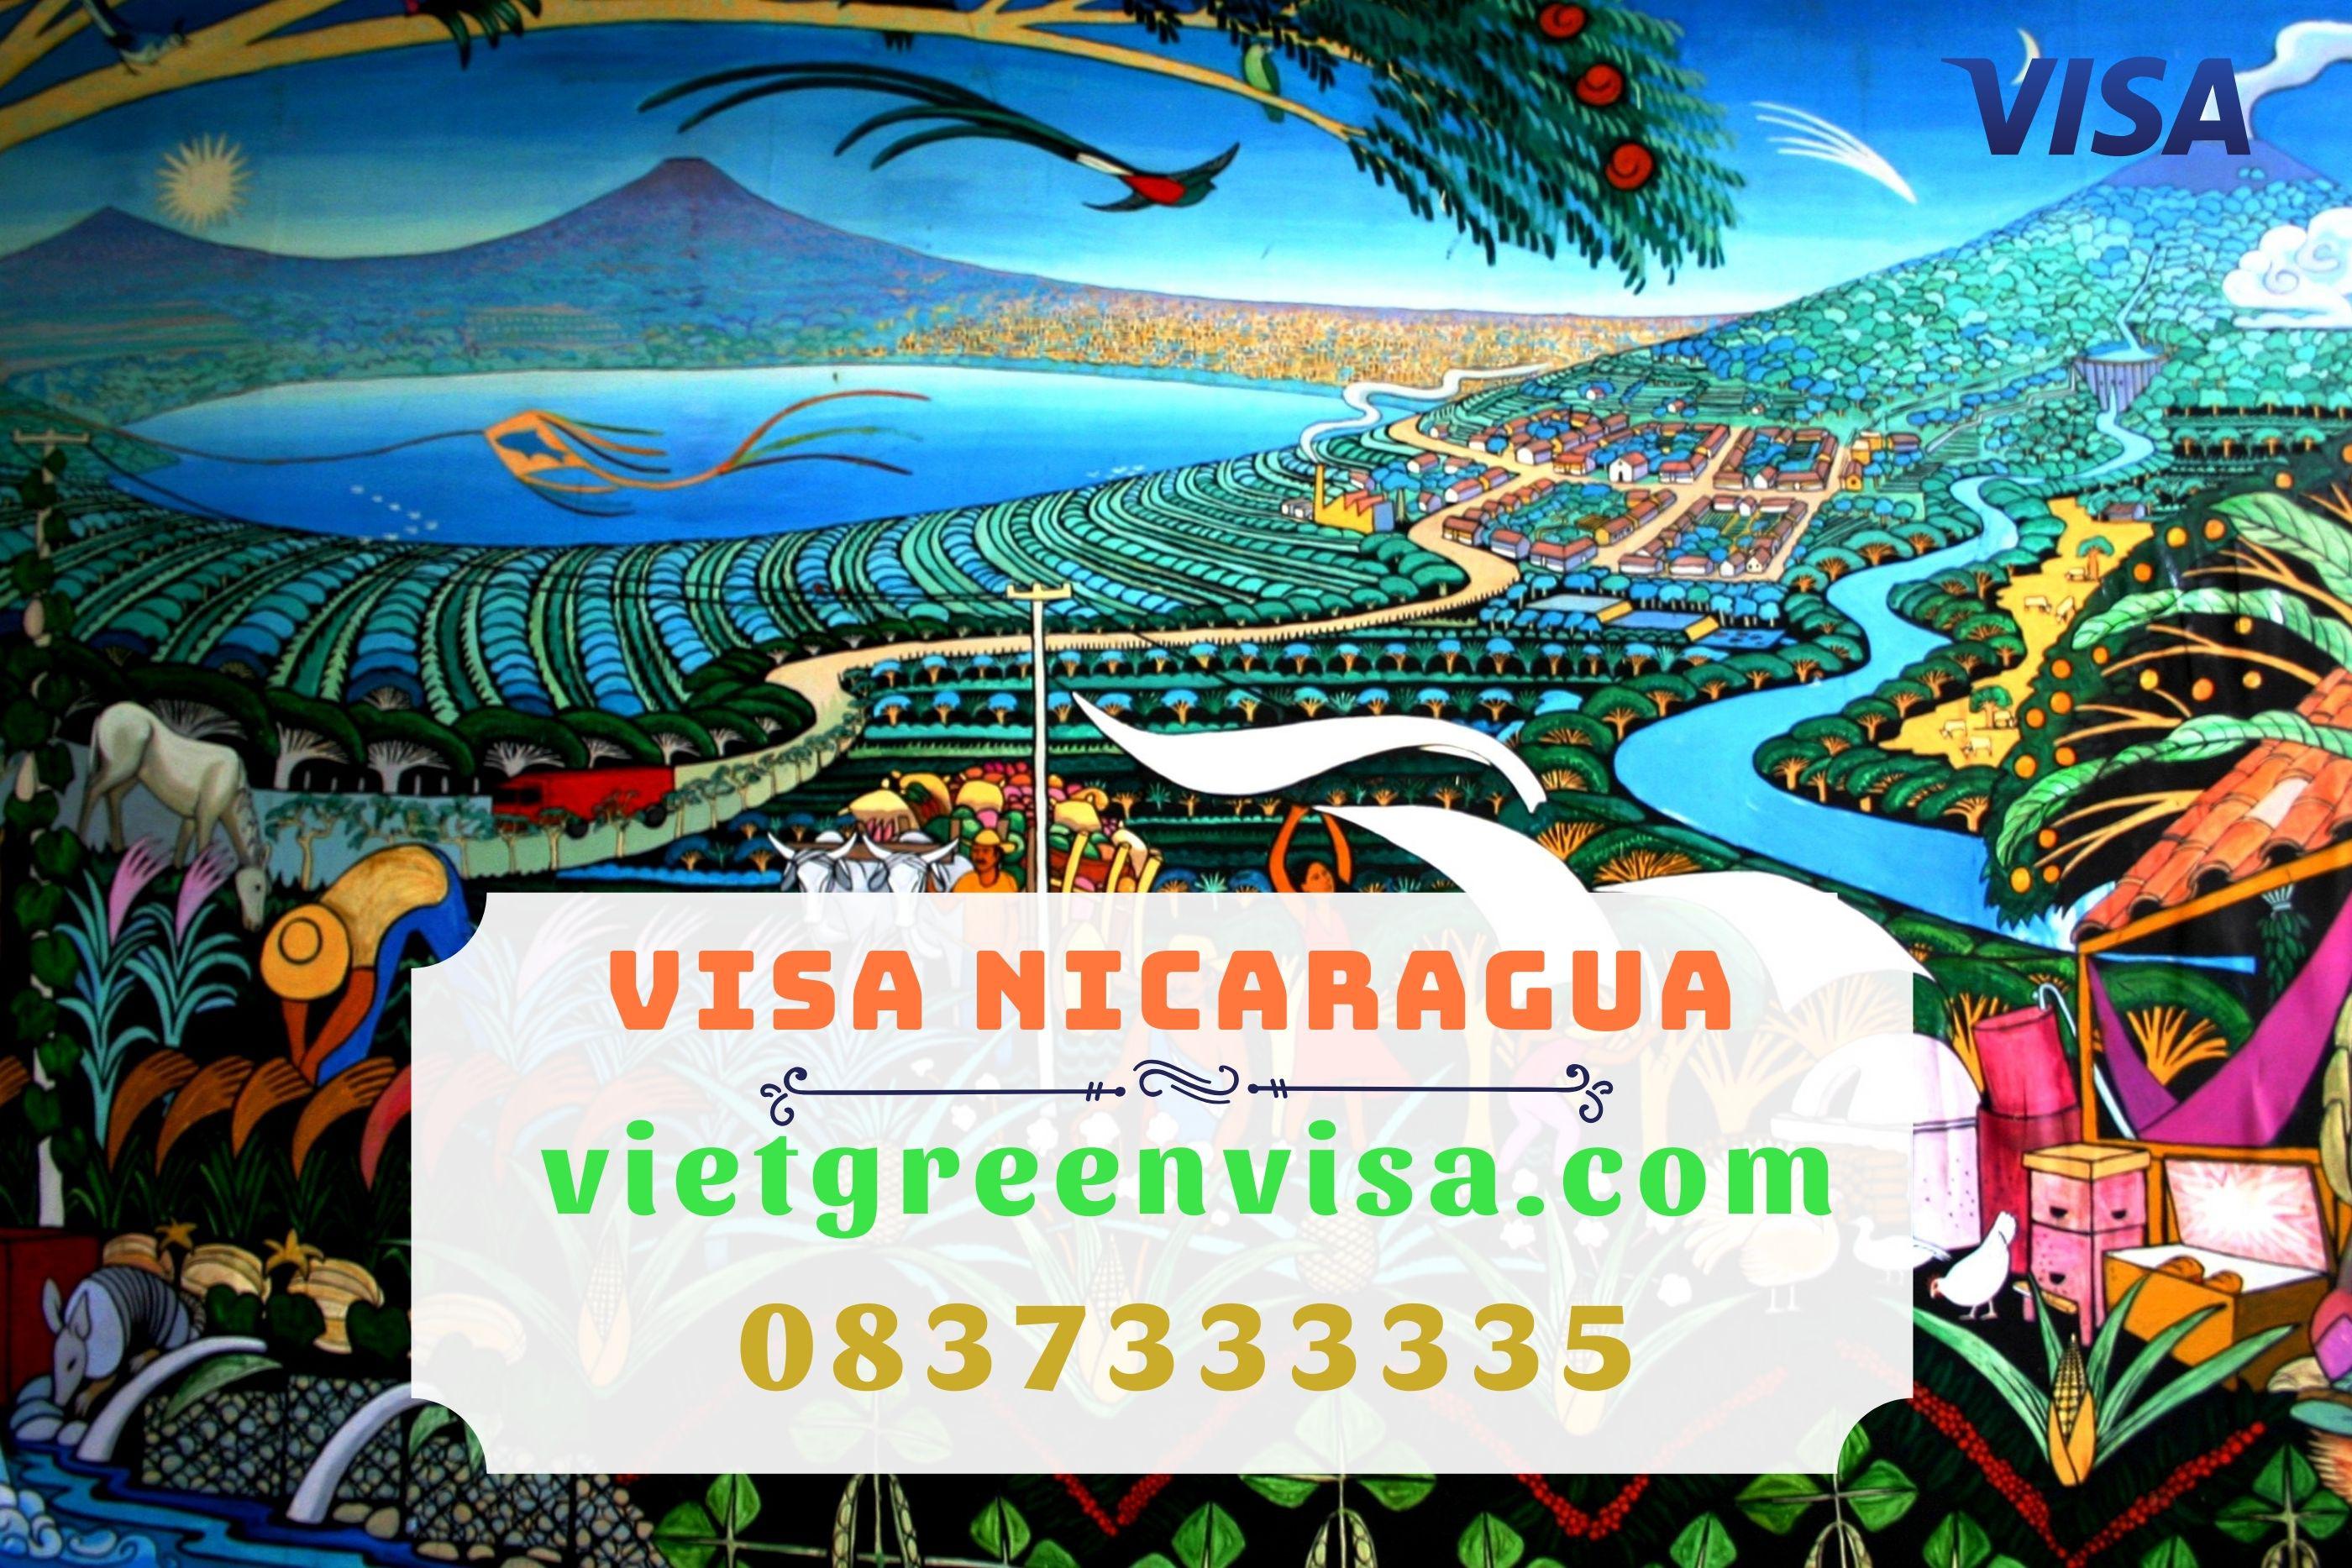 Kinh nghiệm xin visa Nicaragua nhanh chóng và hiệu quả